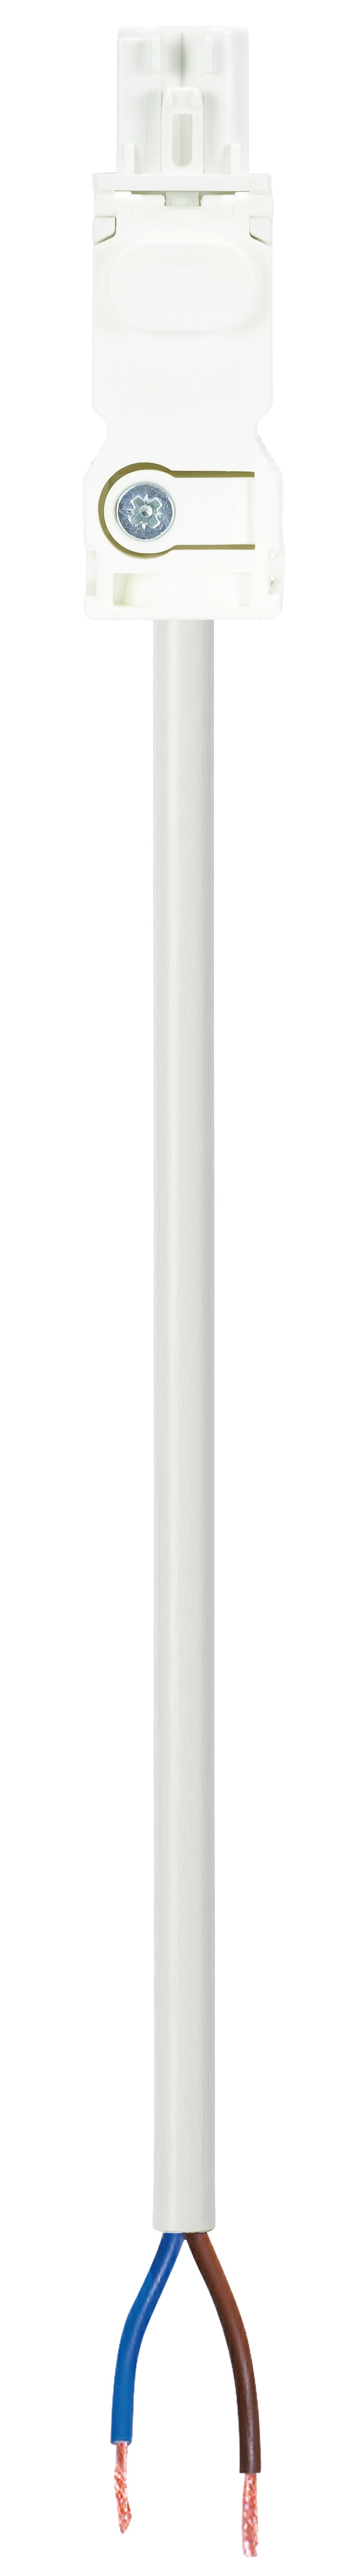 Wieland - cordon GST15i2 4m f-- 1,52 HO5Z1Z1f blanc (Bca)